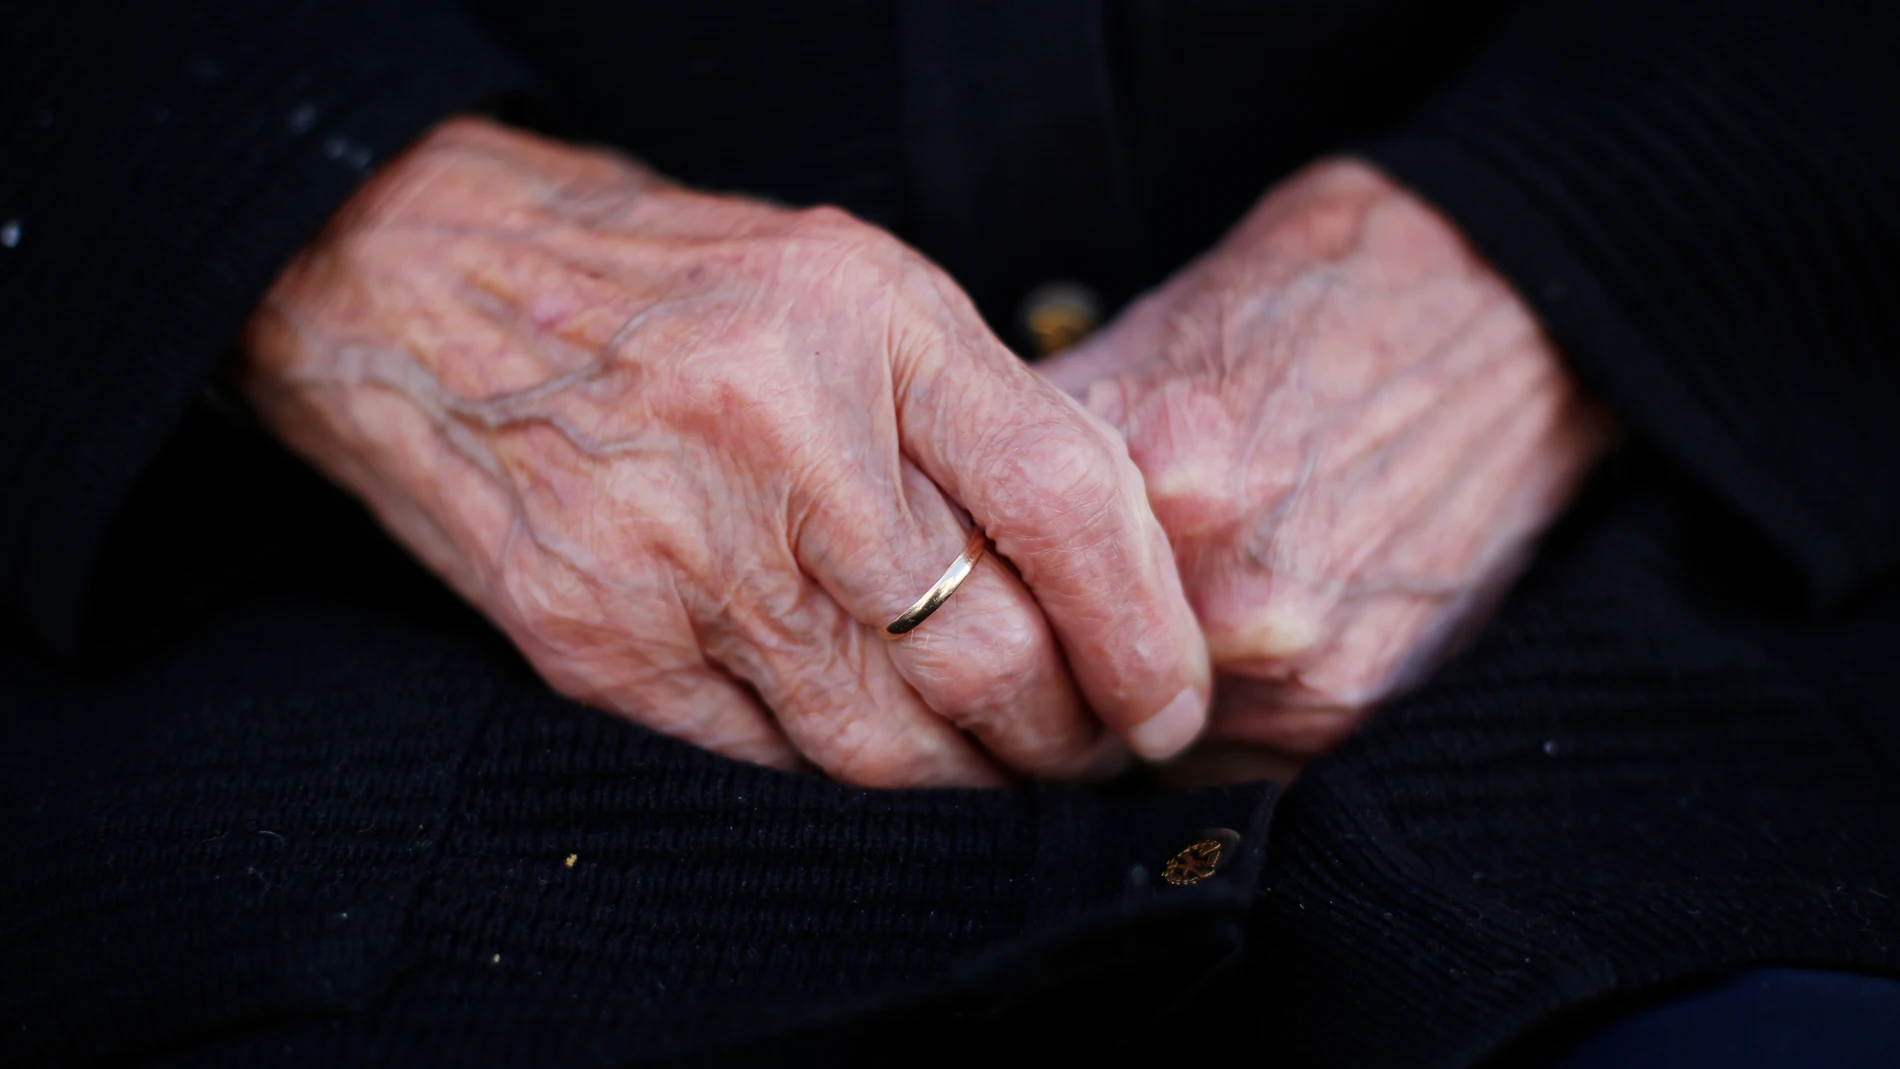 La situación financiera pesa cada vez más en el bienestar de los mayores, especialmente de las mujeres